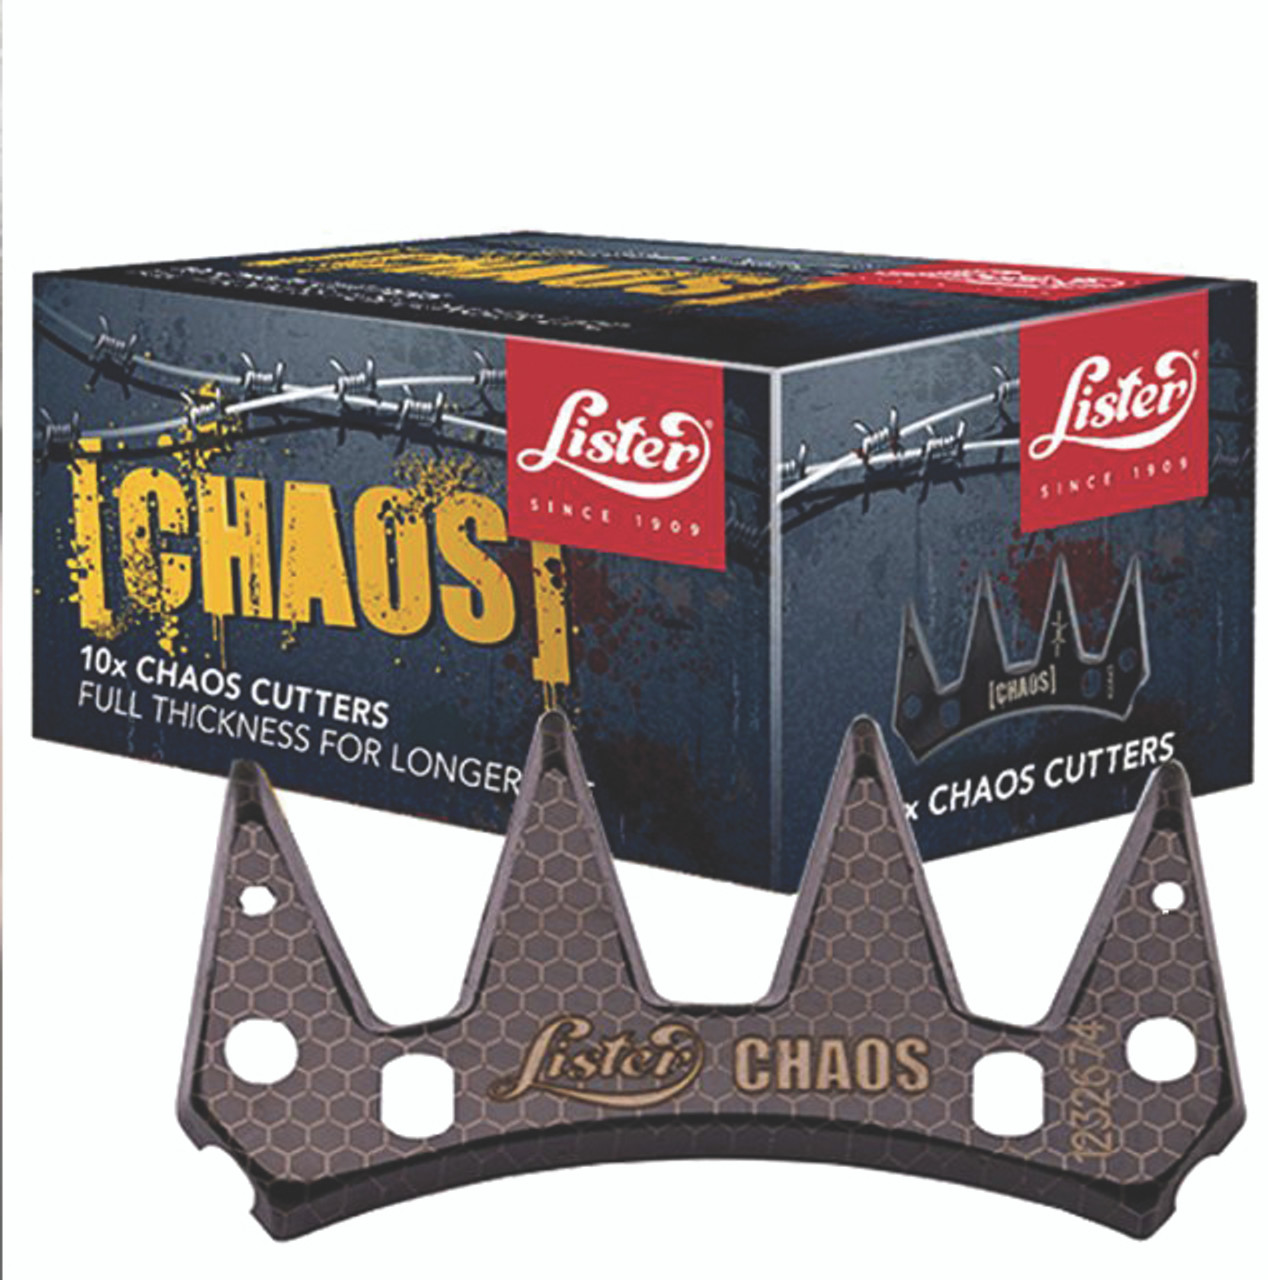 Lister Chaos Cutter 10-pack 9490